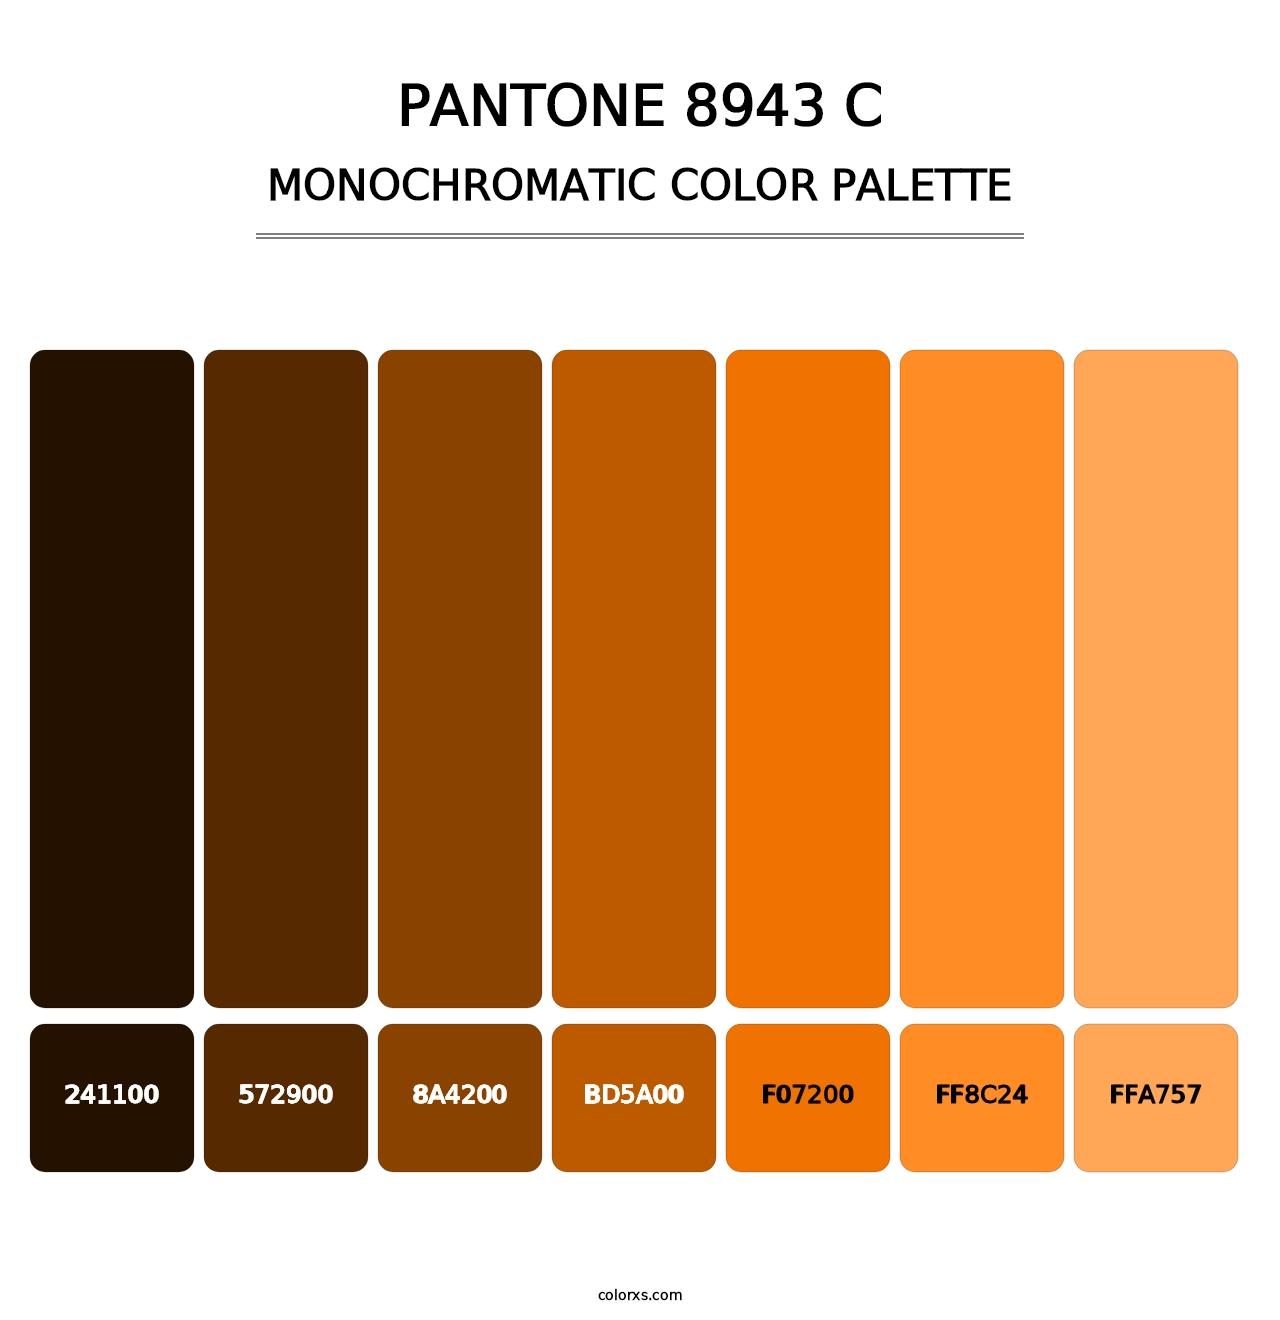 PANTONE 8943 C - Monochromatic Color Palette